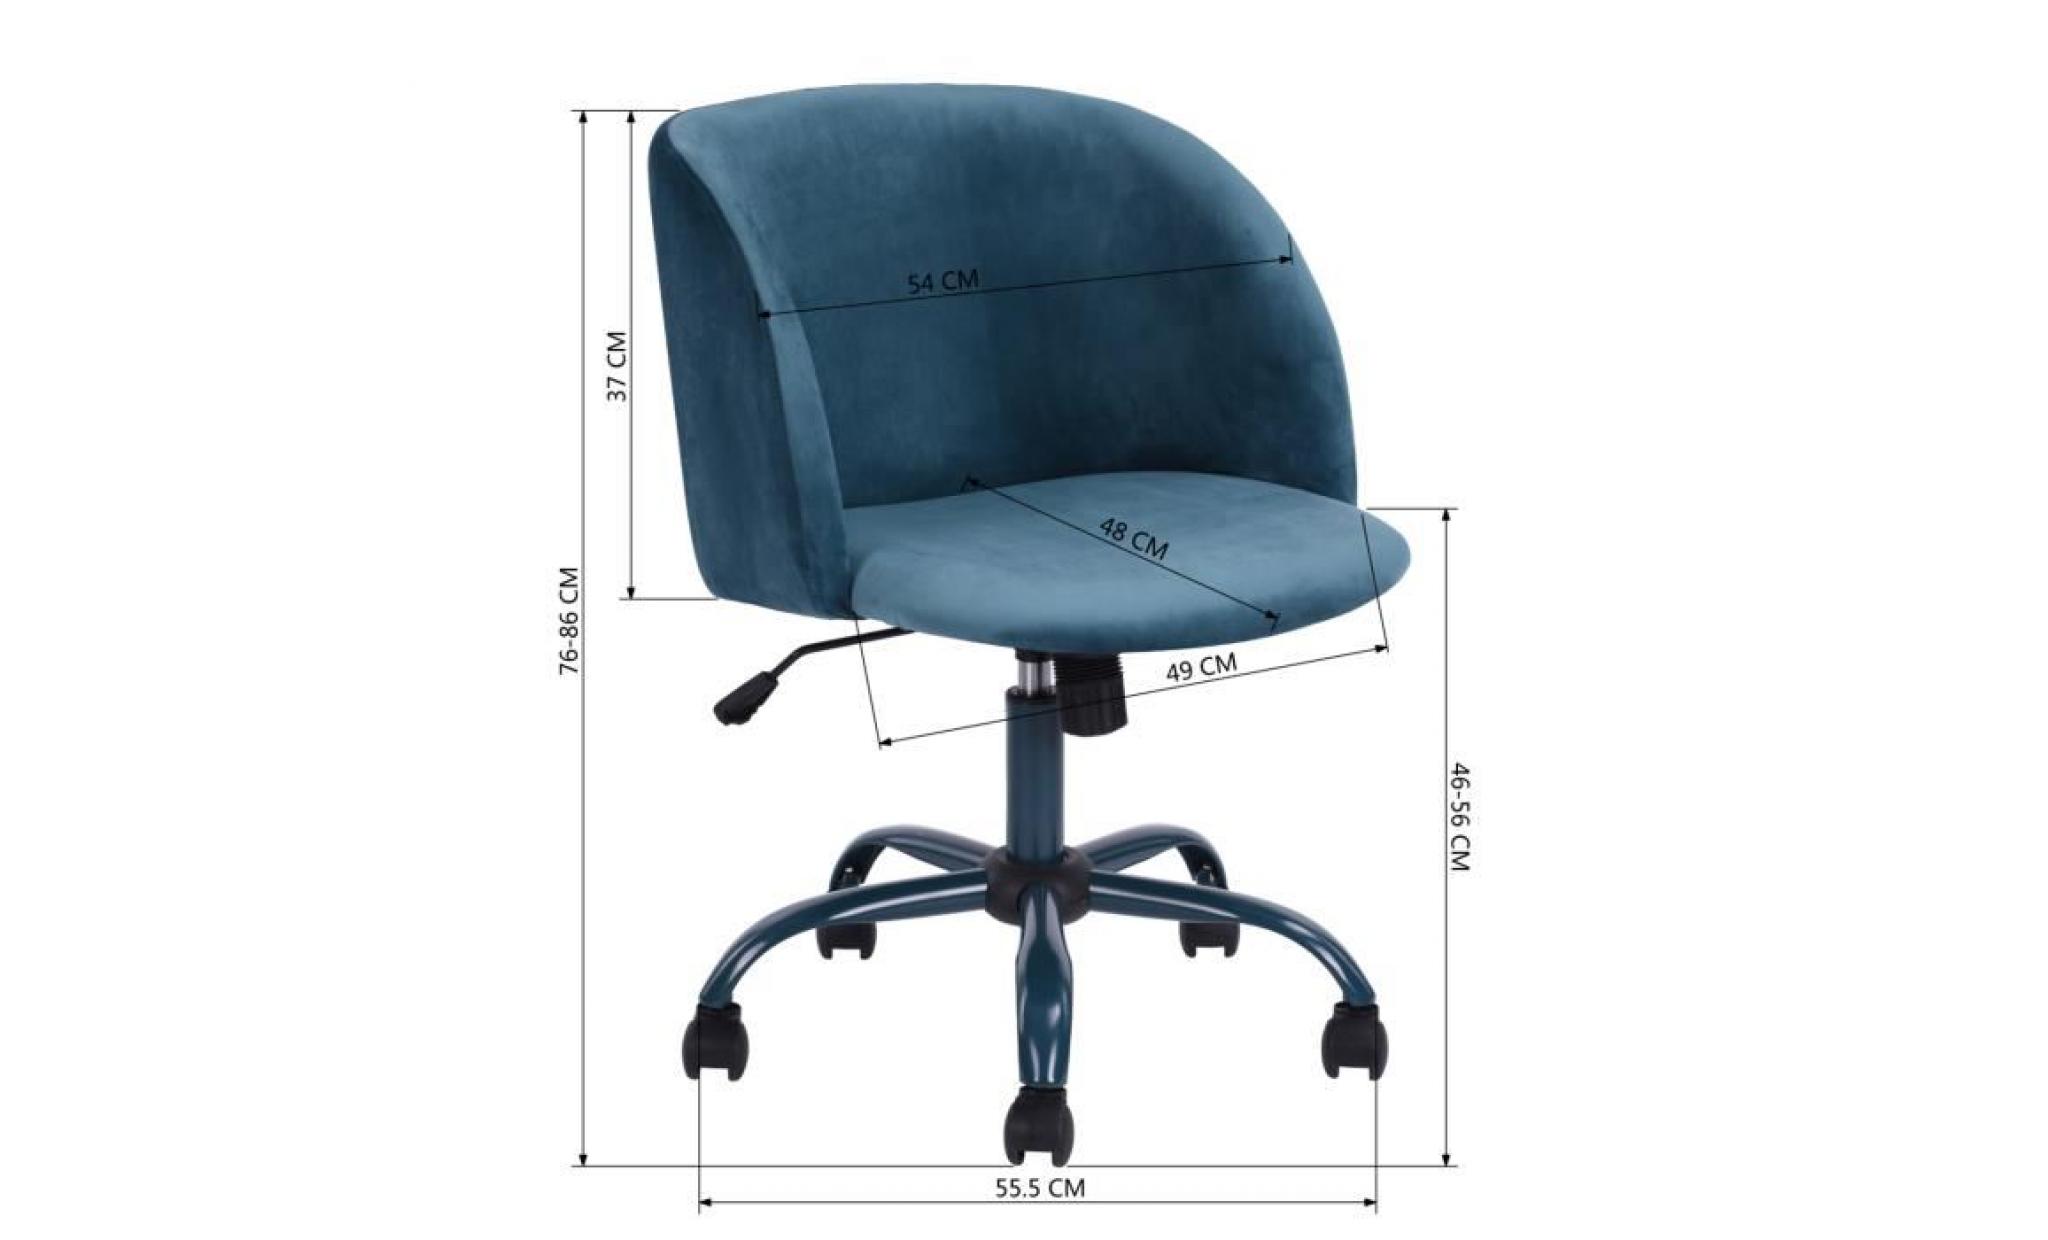 homy casa fauteuil de bureau pivotante 360 degrés hauteur réglable siège souple et comfortable en fabric,rose pas cher